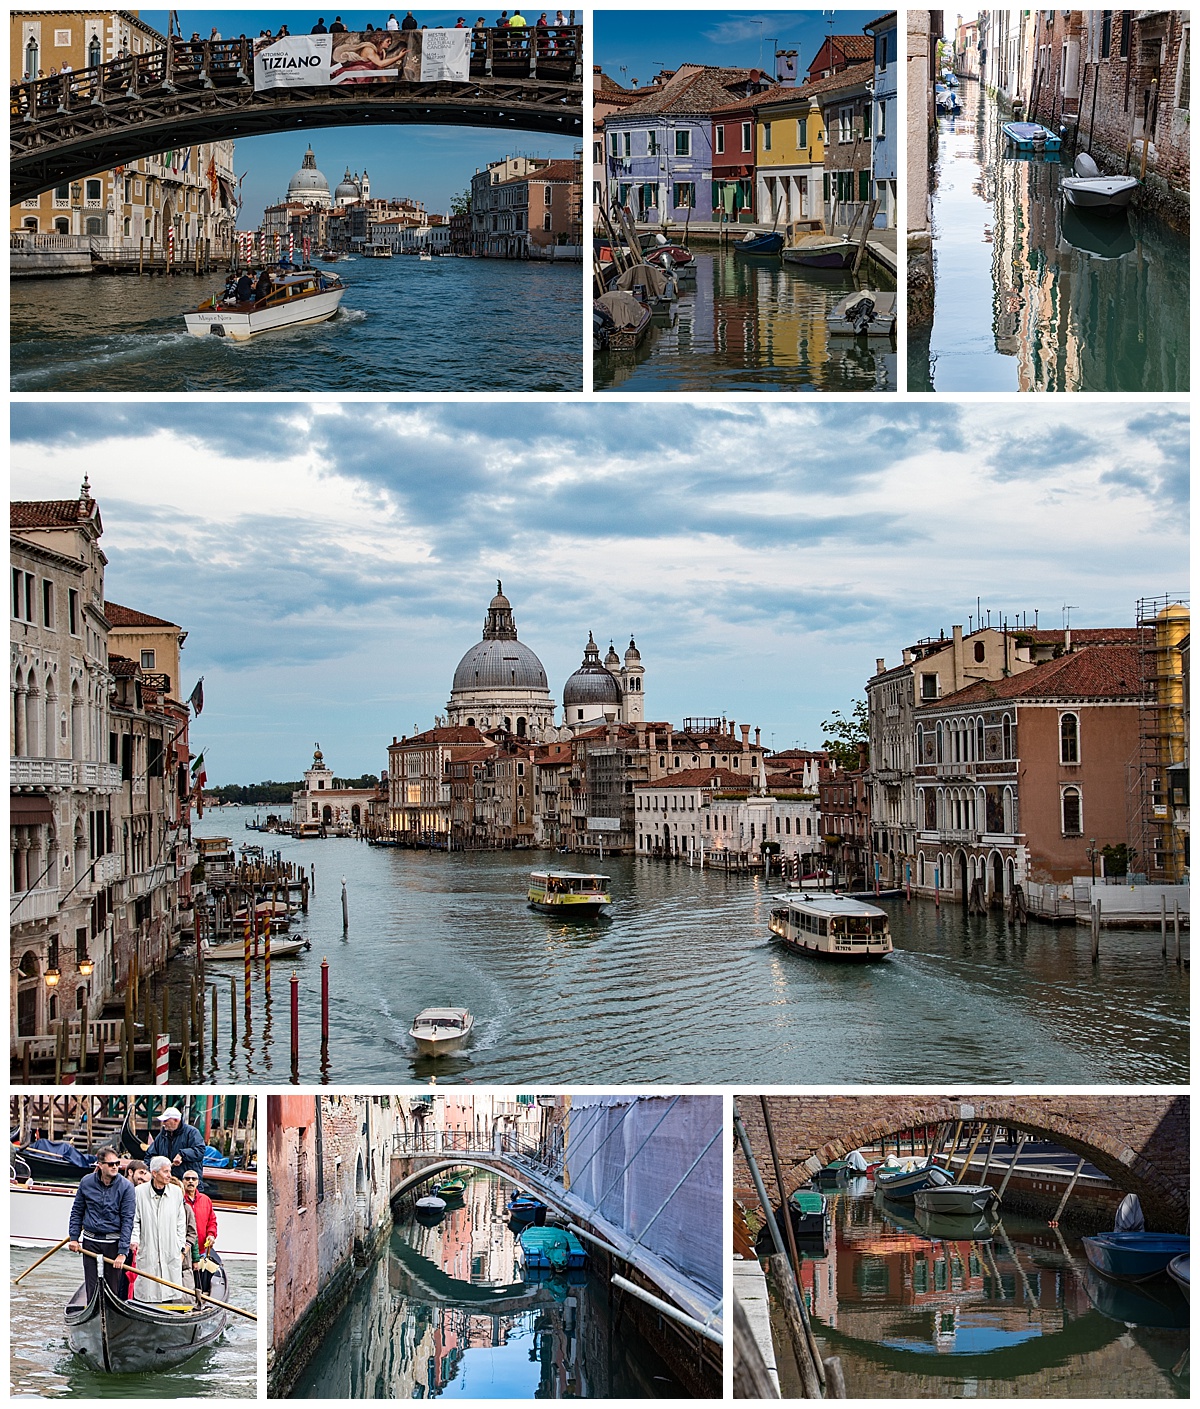 Venice, Italy - boats